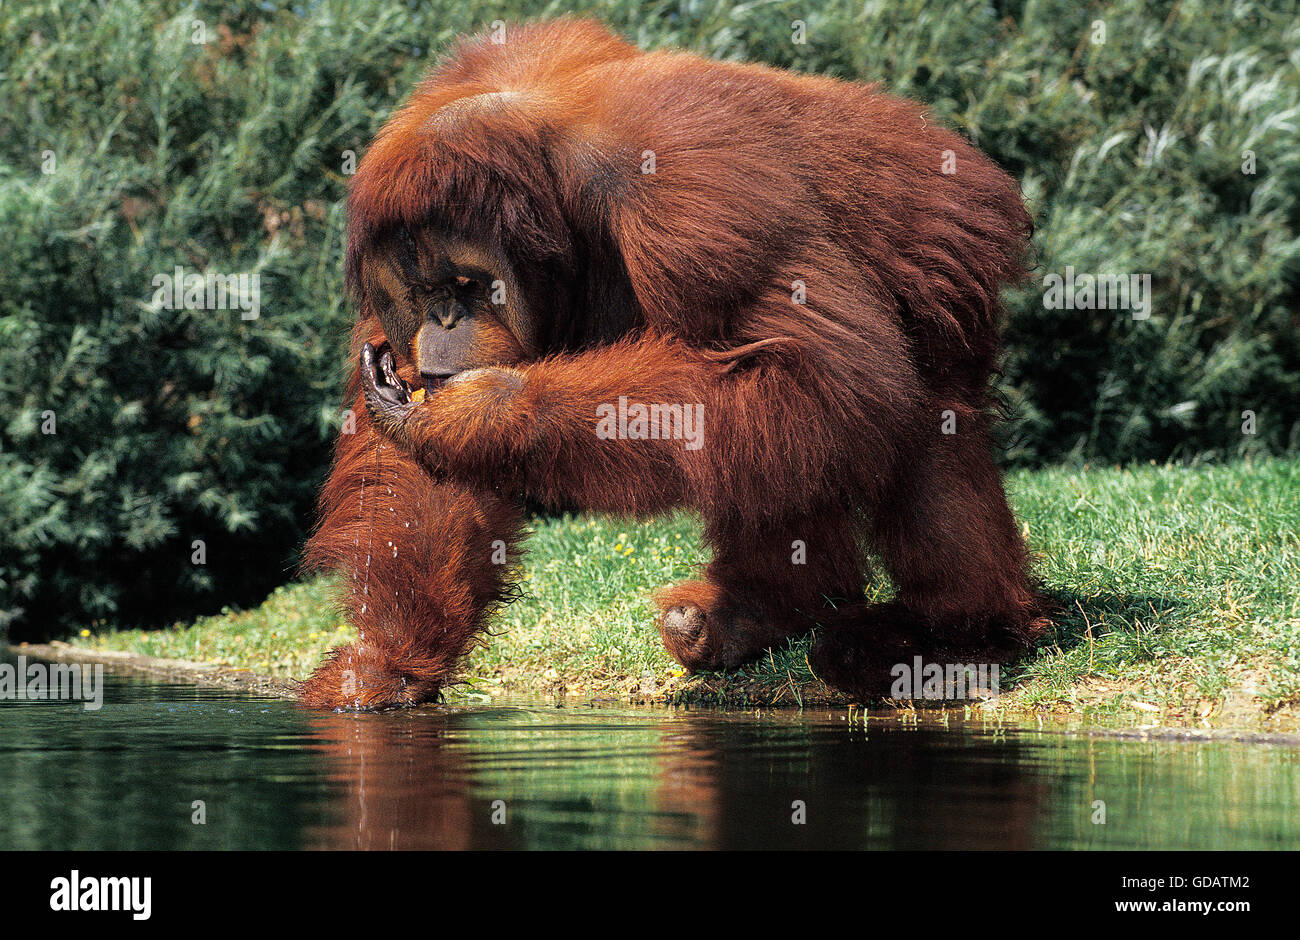 Orang utan, pongo pygmaeus, Male drinking Water Stock Photo